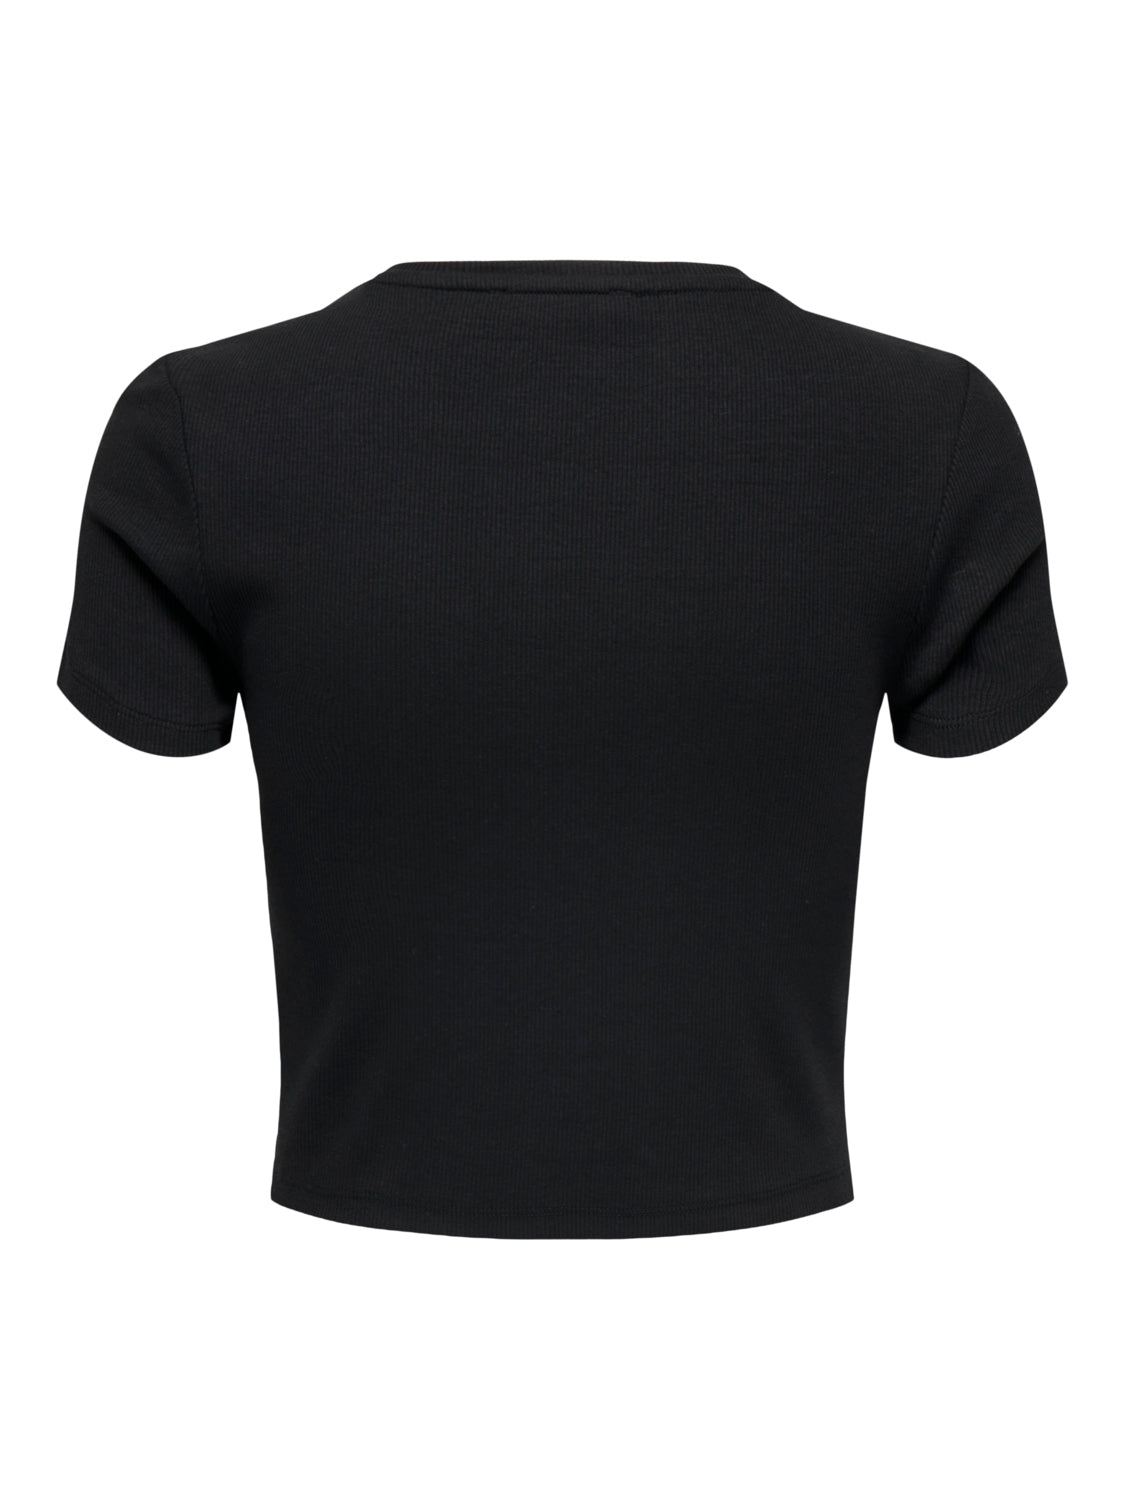 PGPAMMI T-Shirt - Black